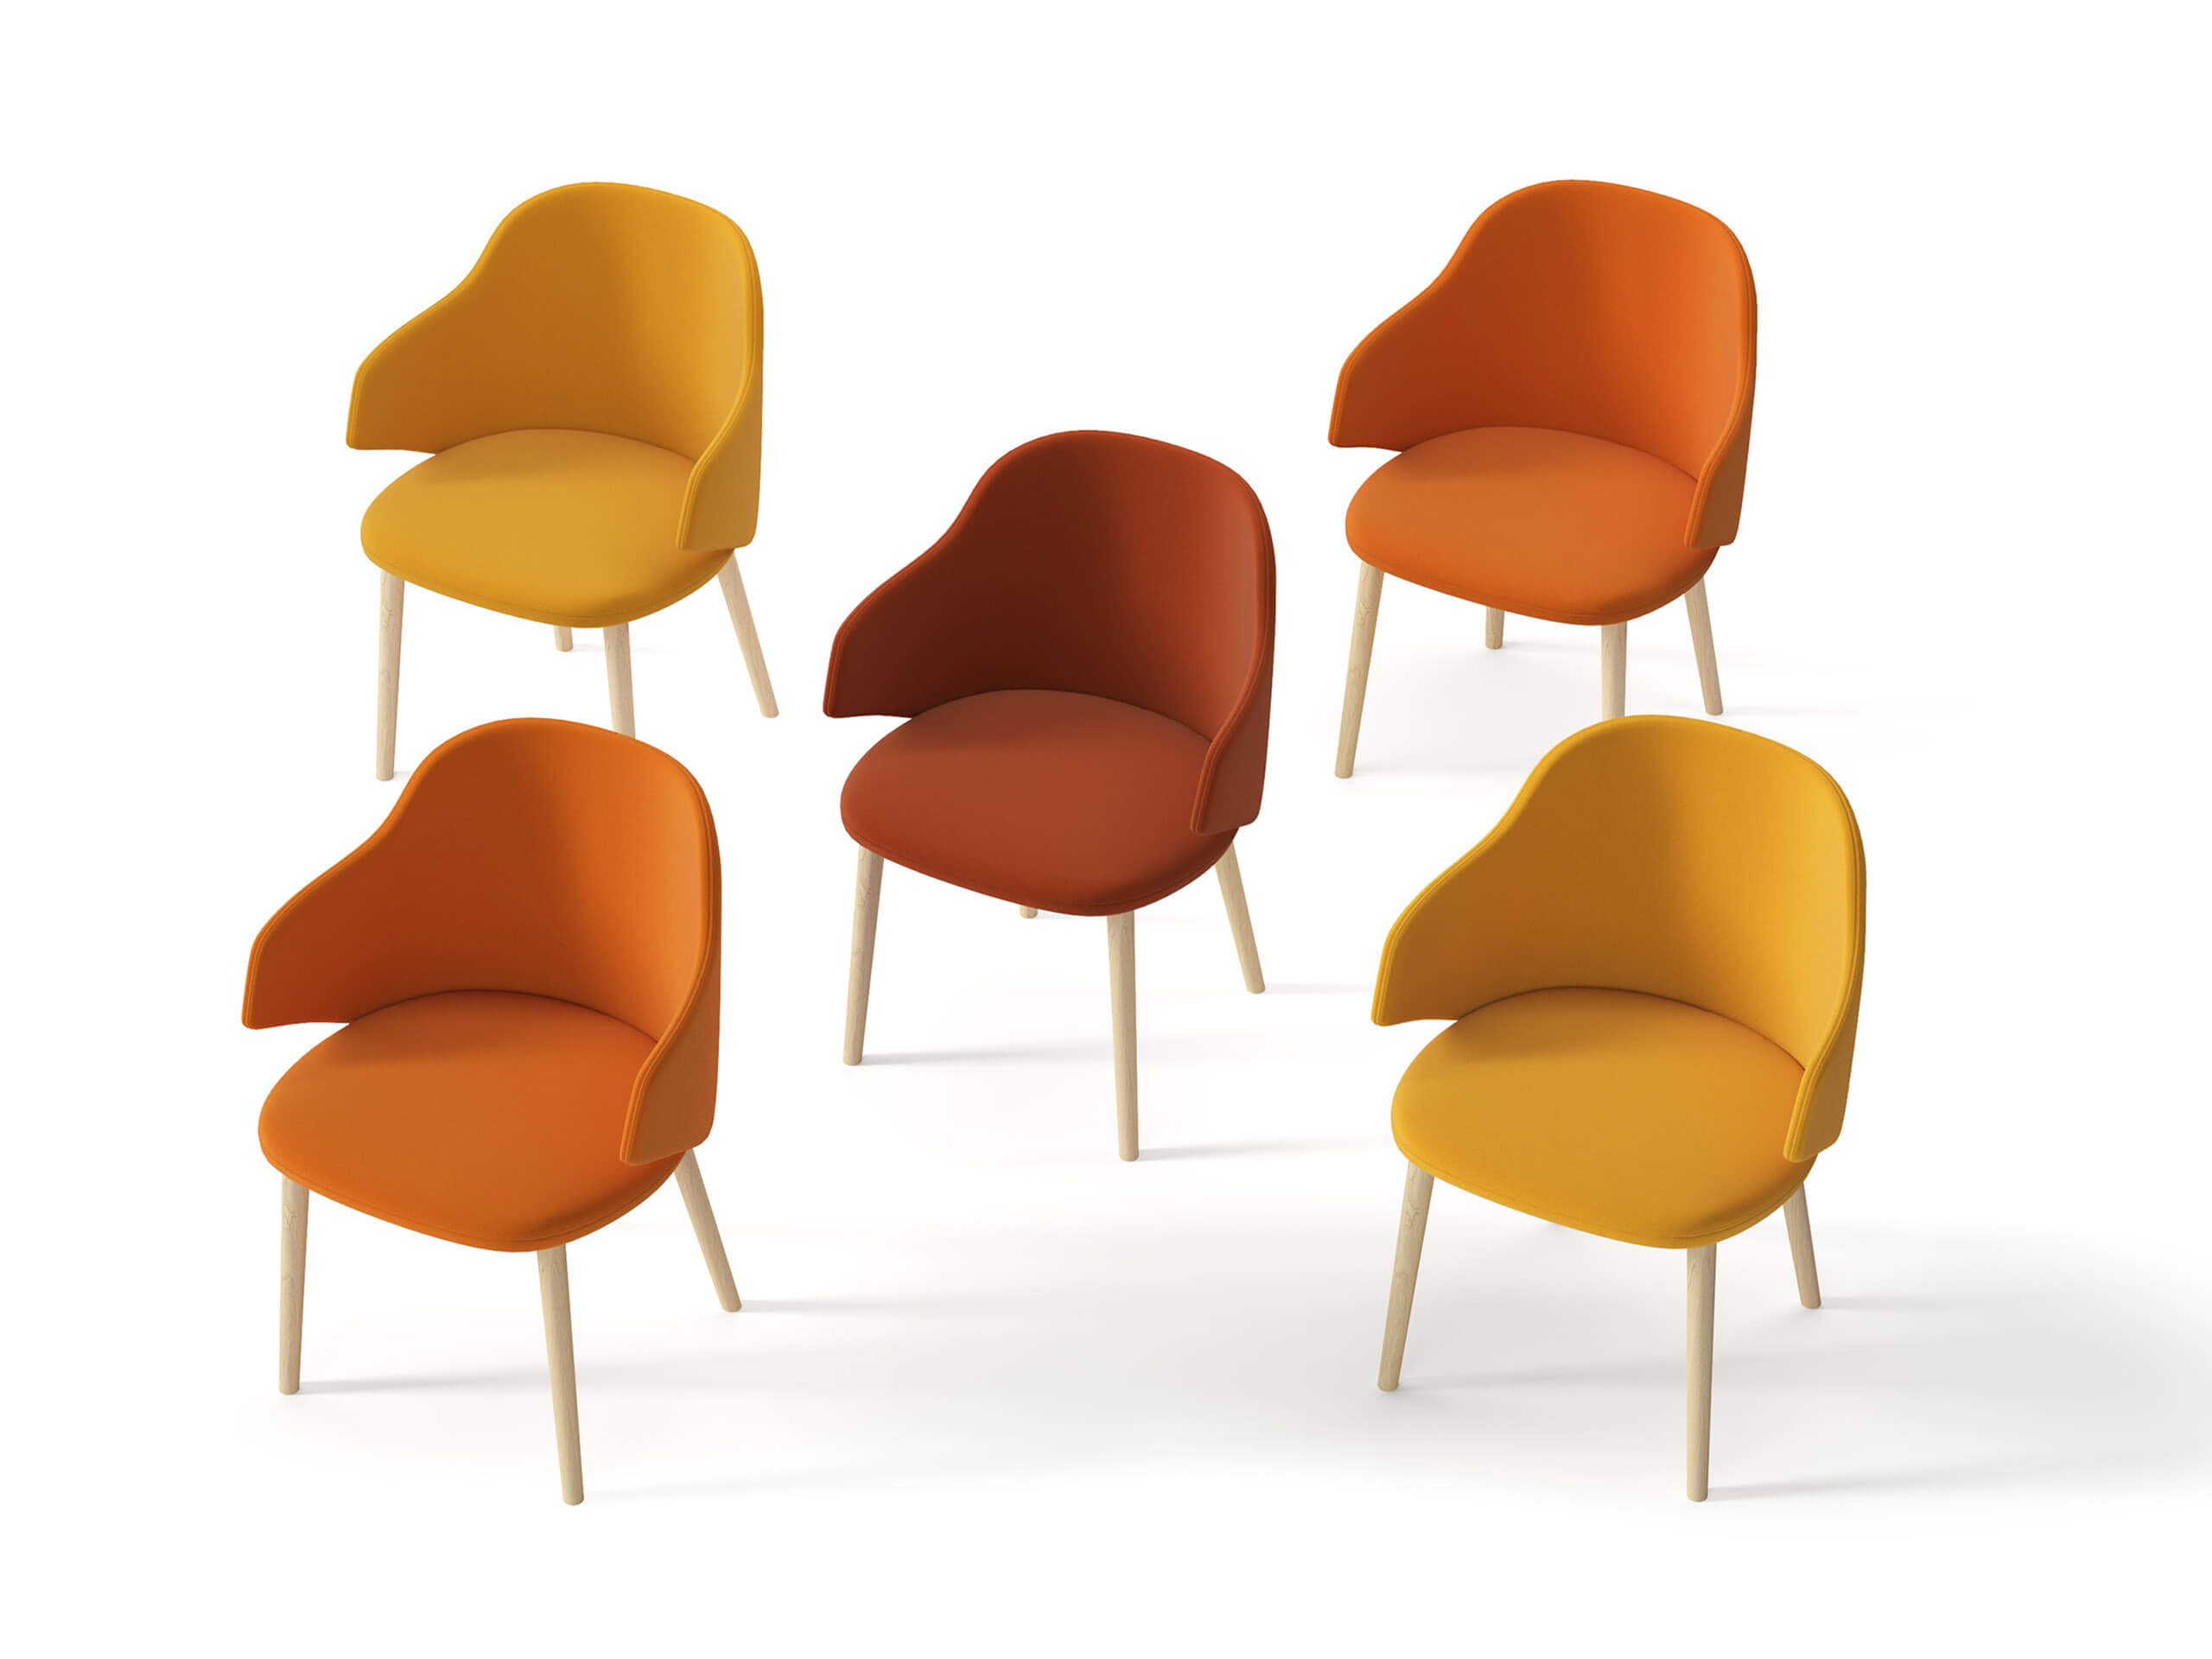 5 sedie con colori sfumati dal giallo all'arancione